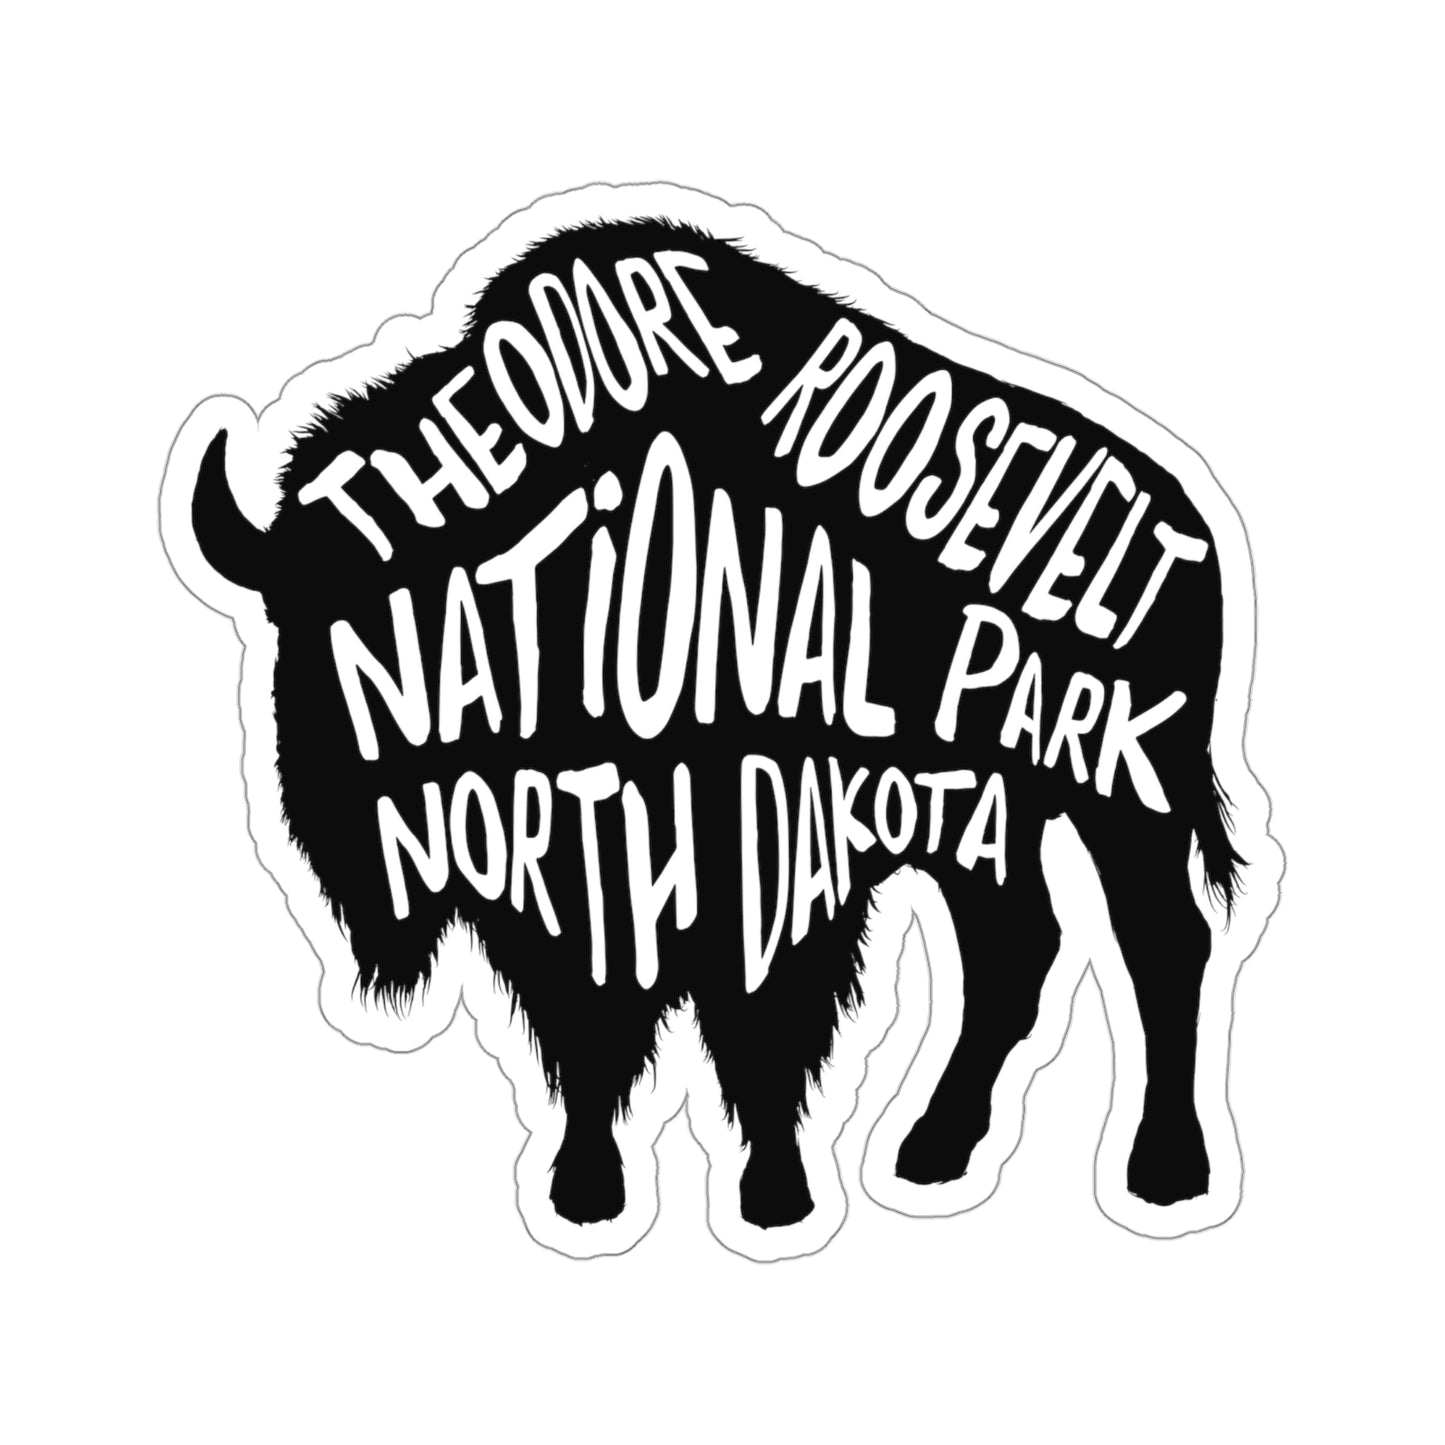 Theodore Roosevelt National Park Sticker - Bison